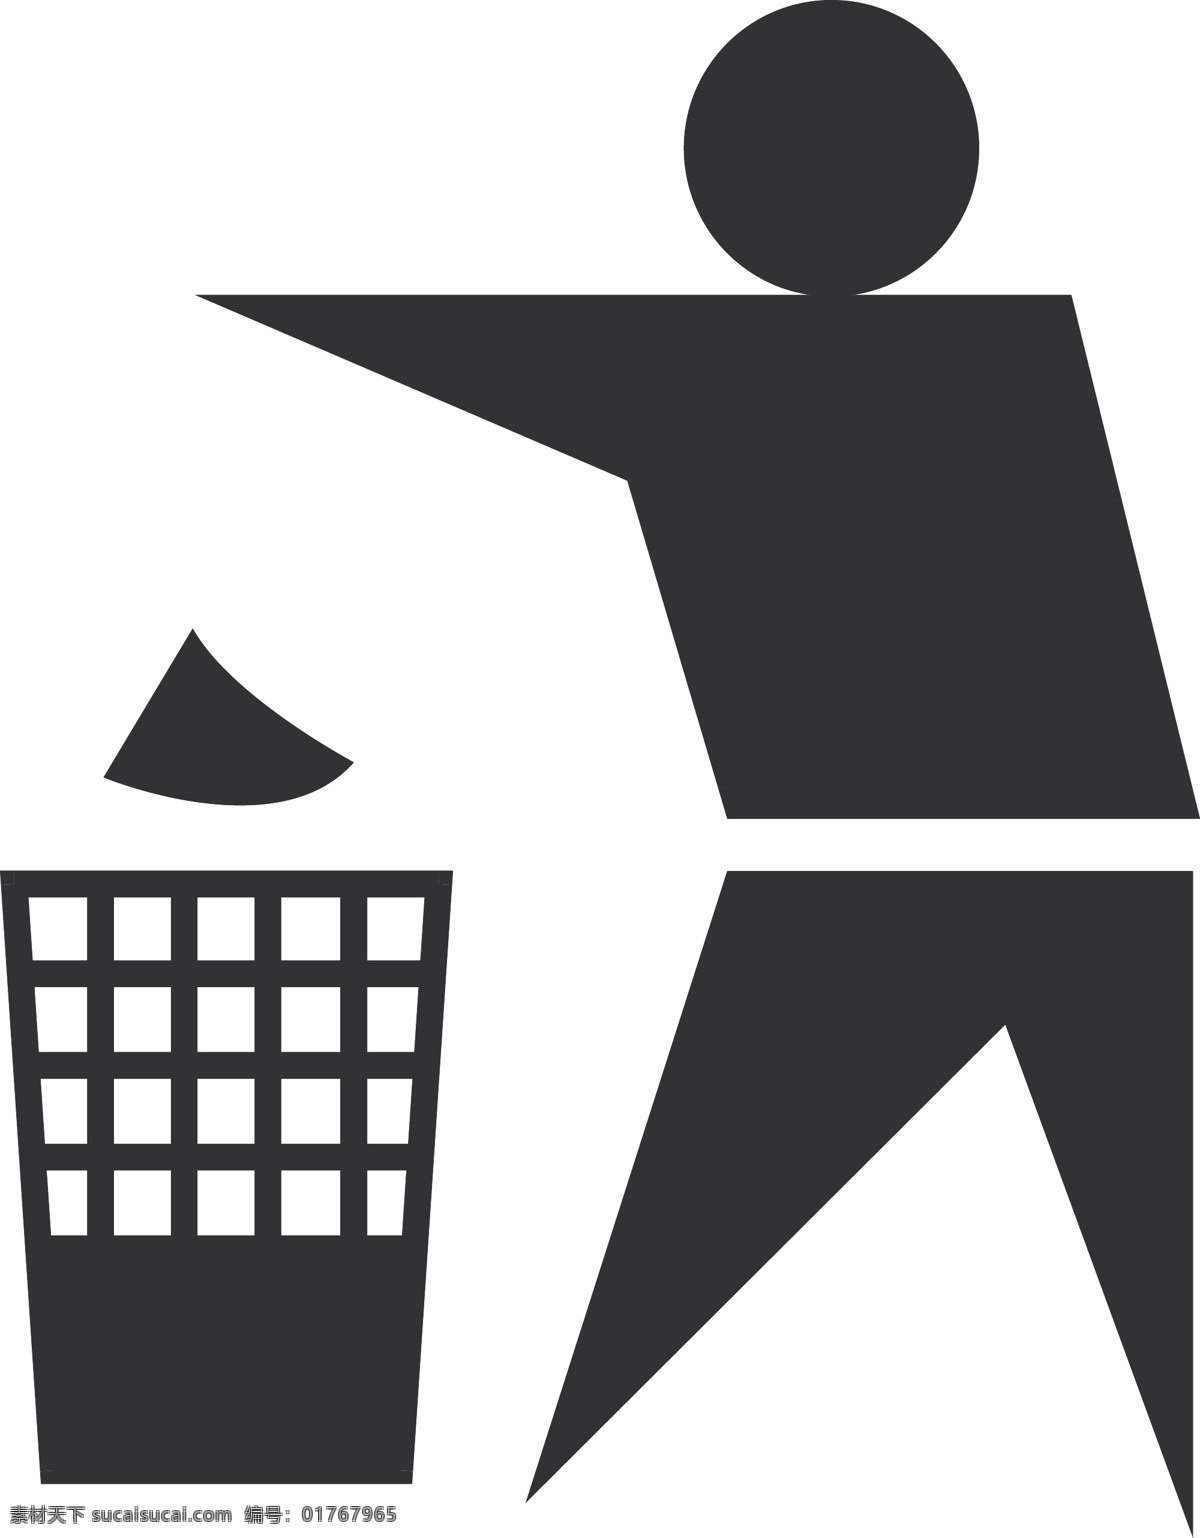 卫生 标识 扔垃圾 图标 注意卫生 卫生标识 垃圾筐 人体简化 矢量图 其他矢量图